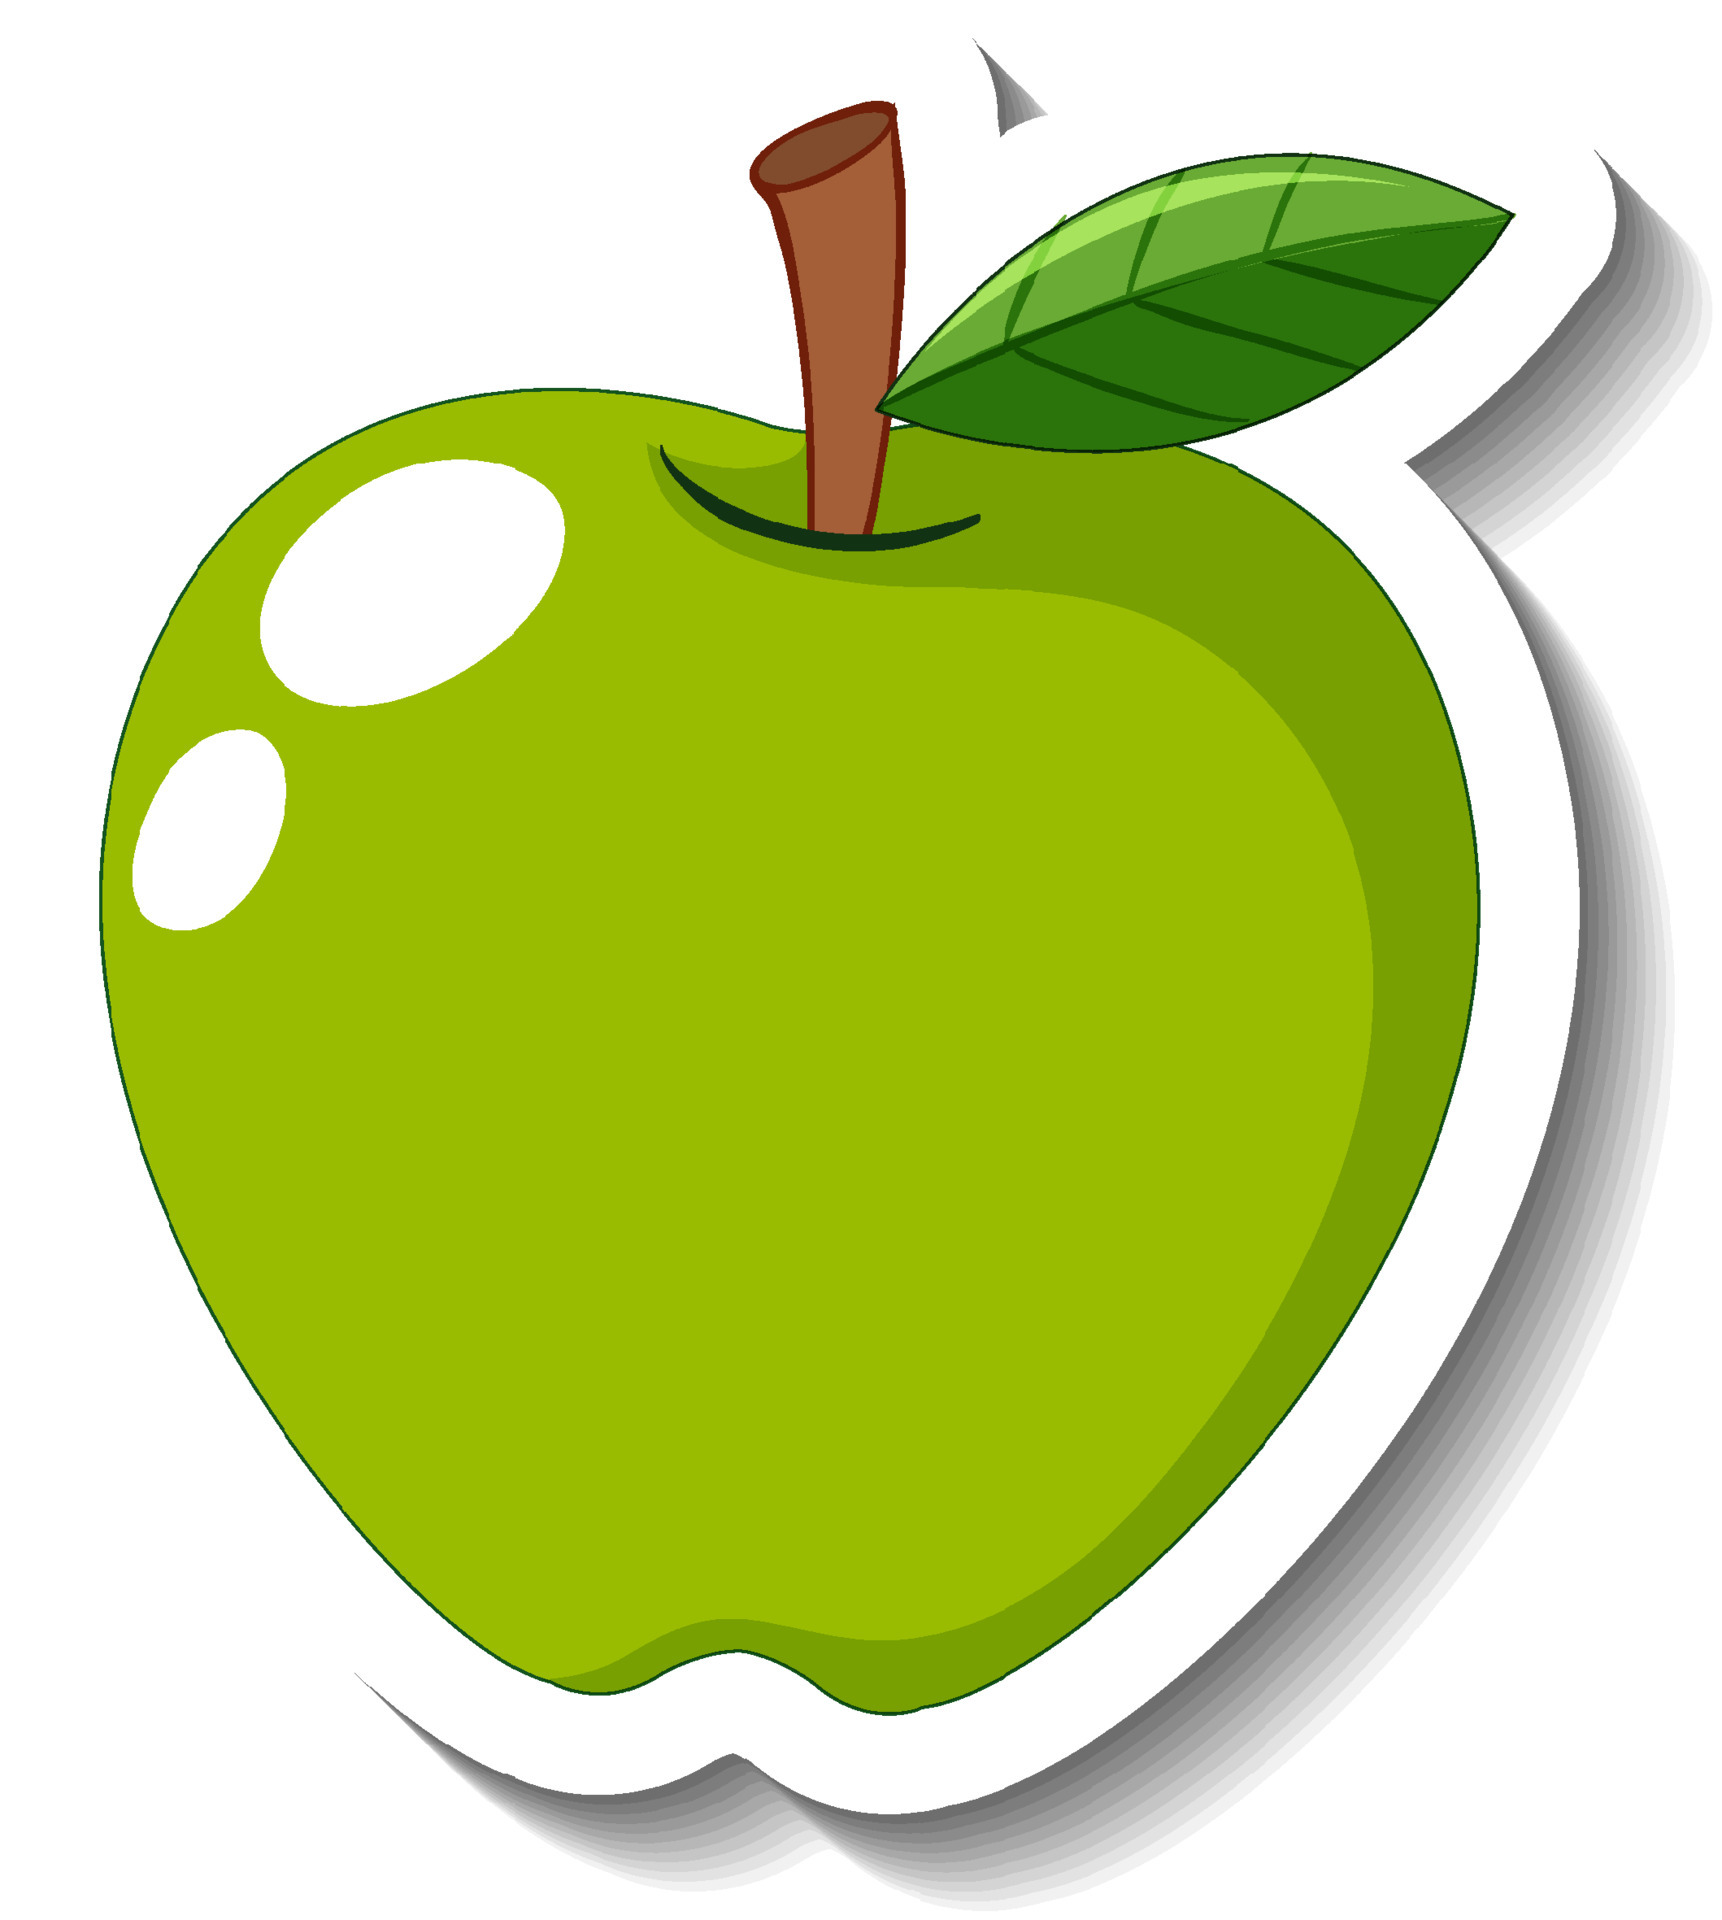 Green Apple Vectores, Iconos, Gráficos y Fondos para Descargar Gratis